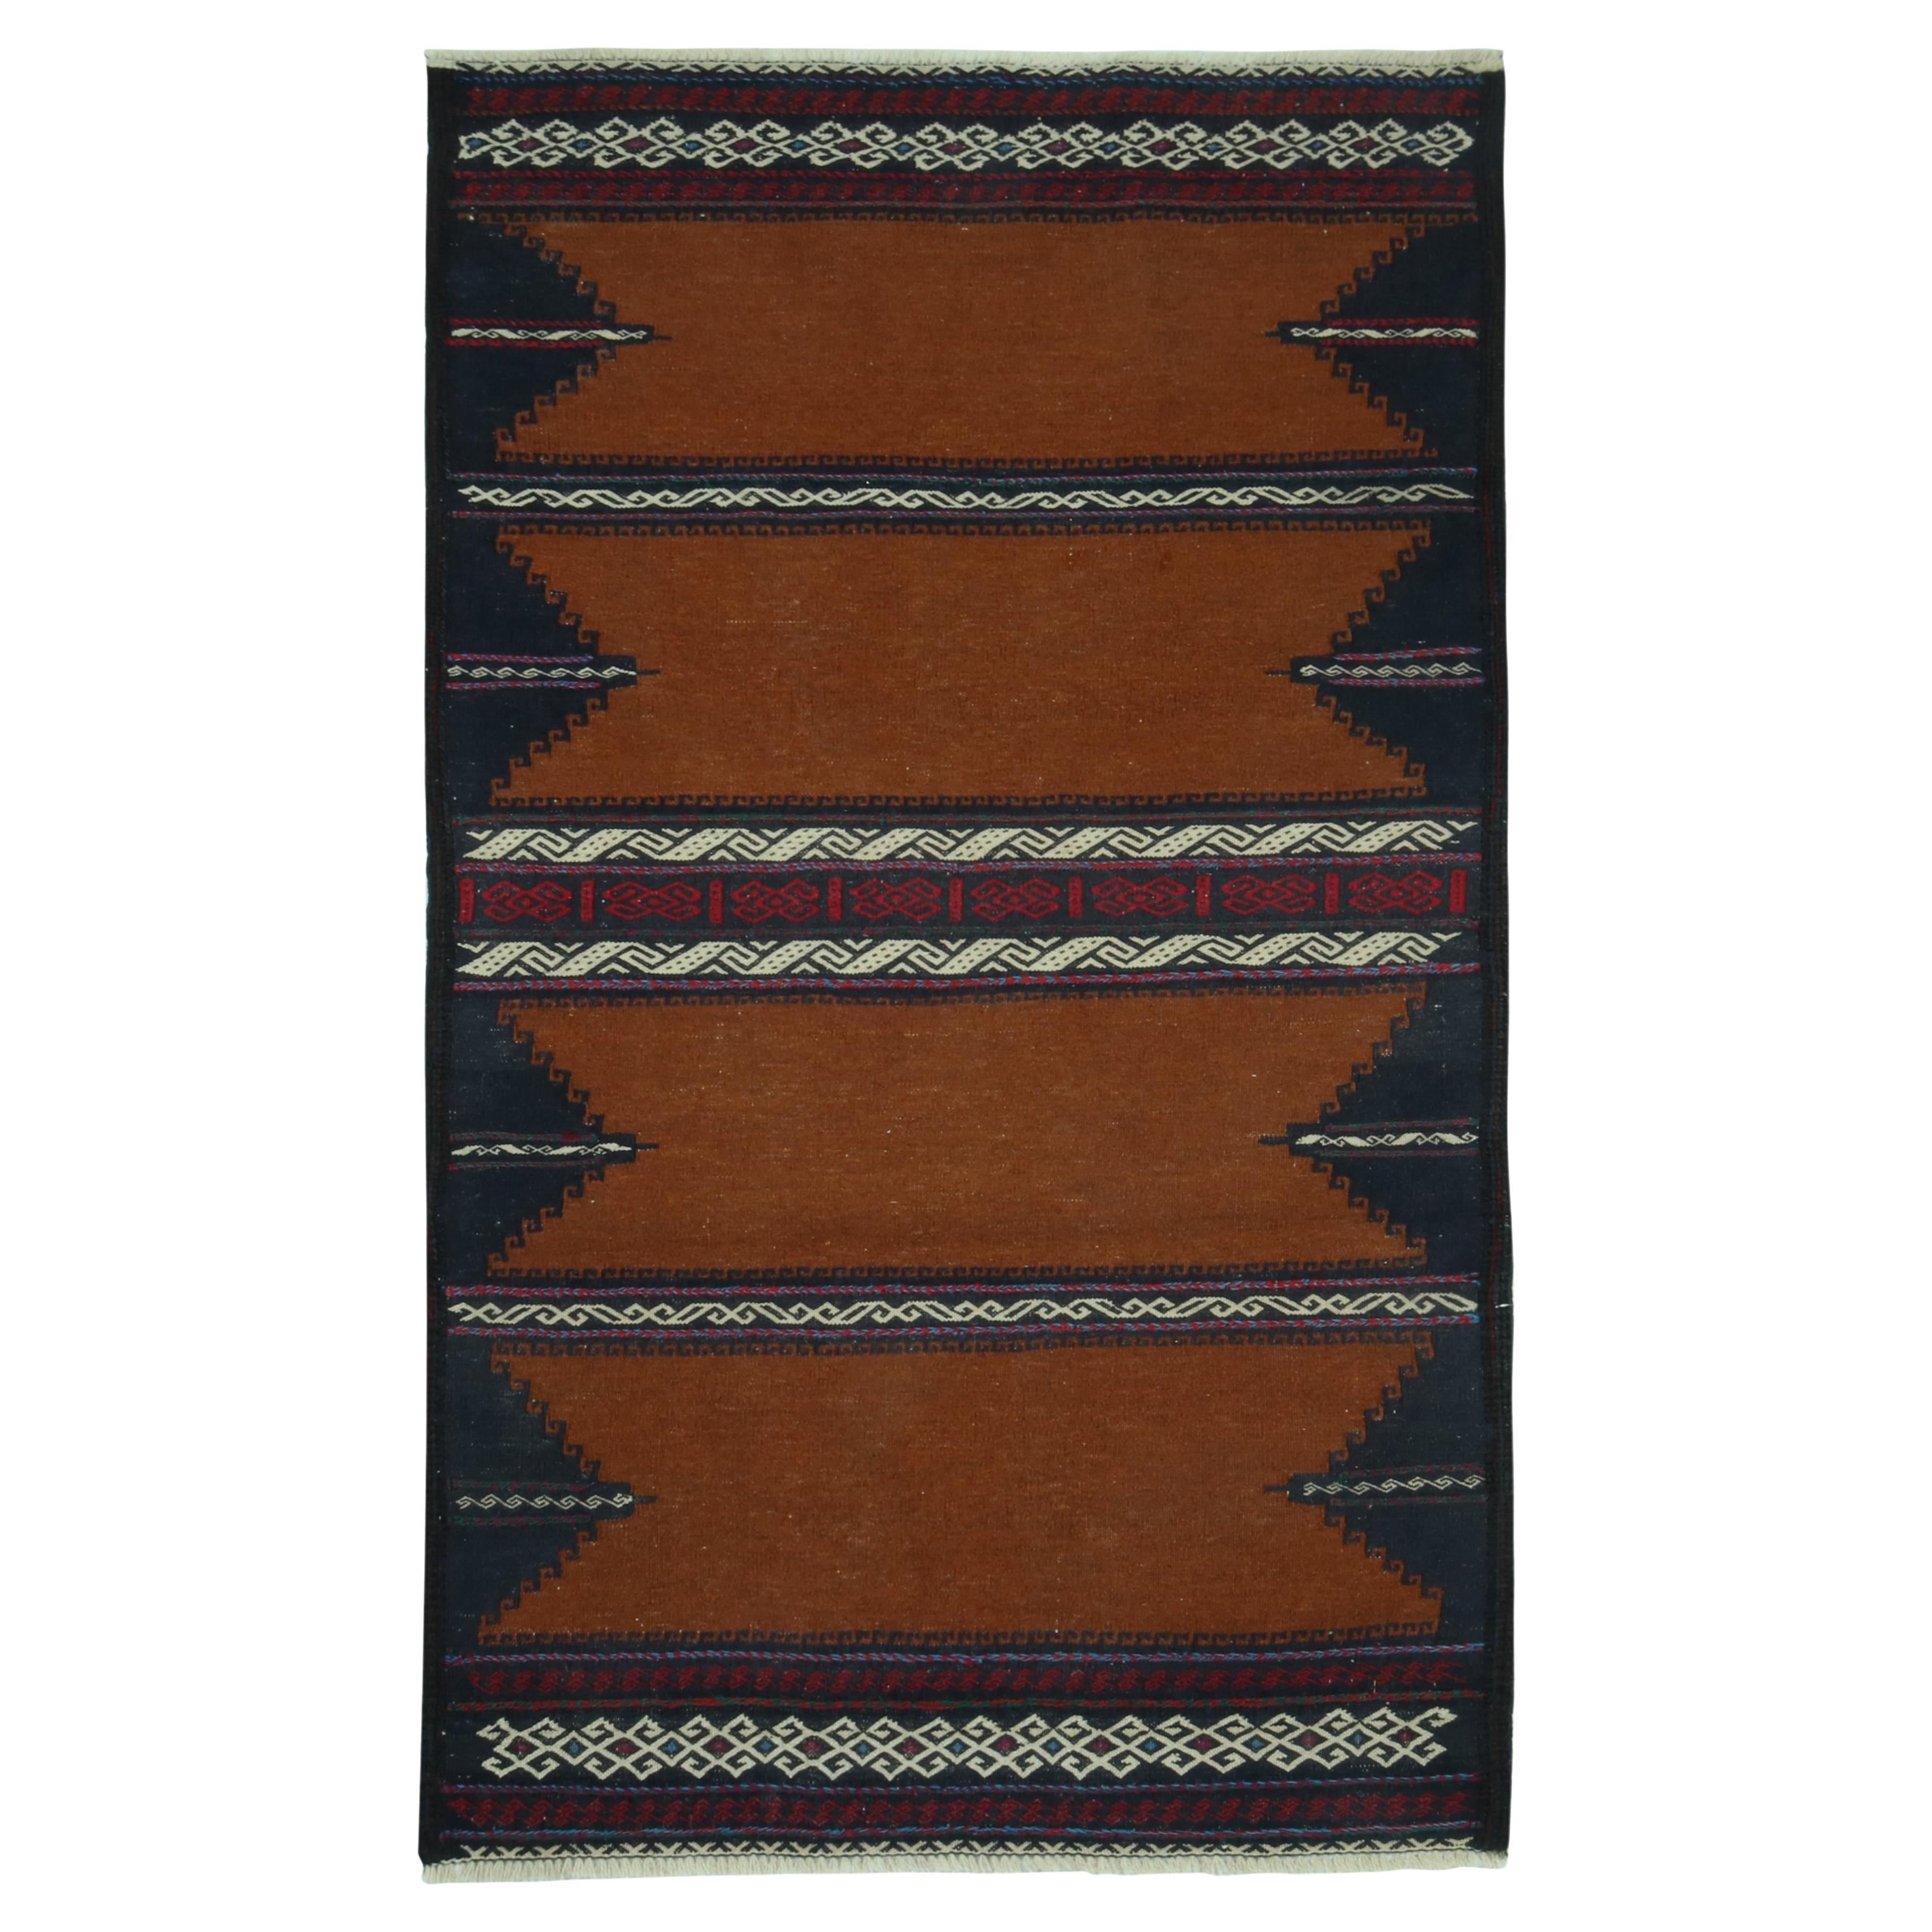 Sofreh Persischer Kelim in Braun mit geometrischen Mustern, von Teppich & Kilim